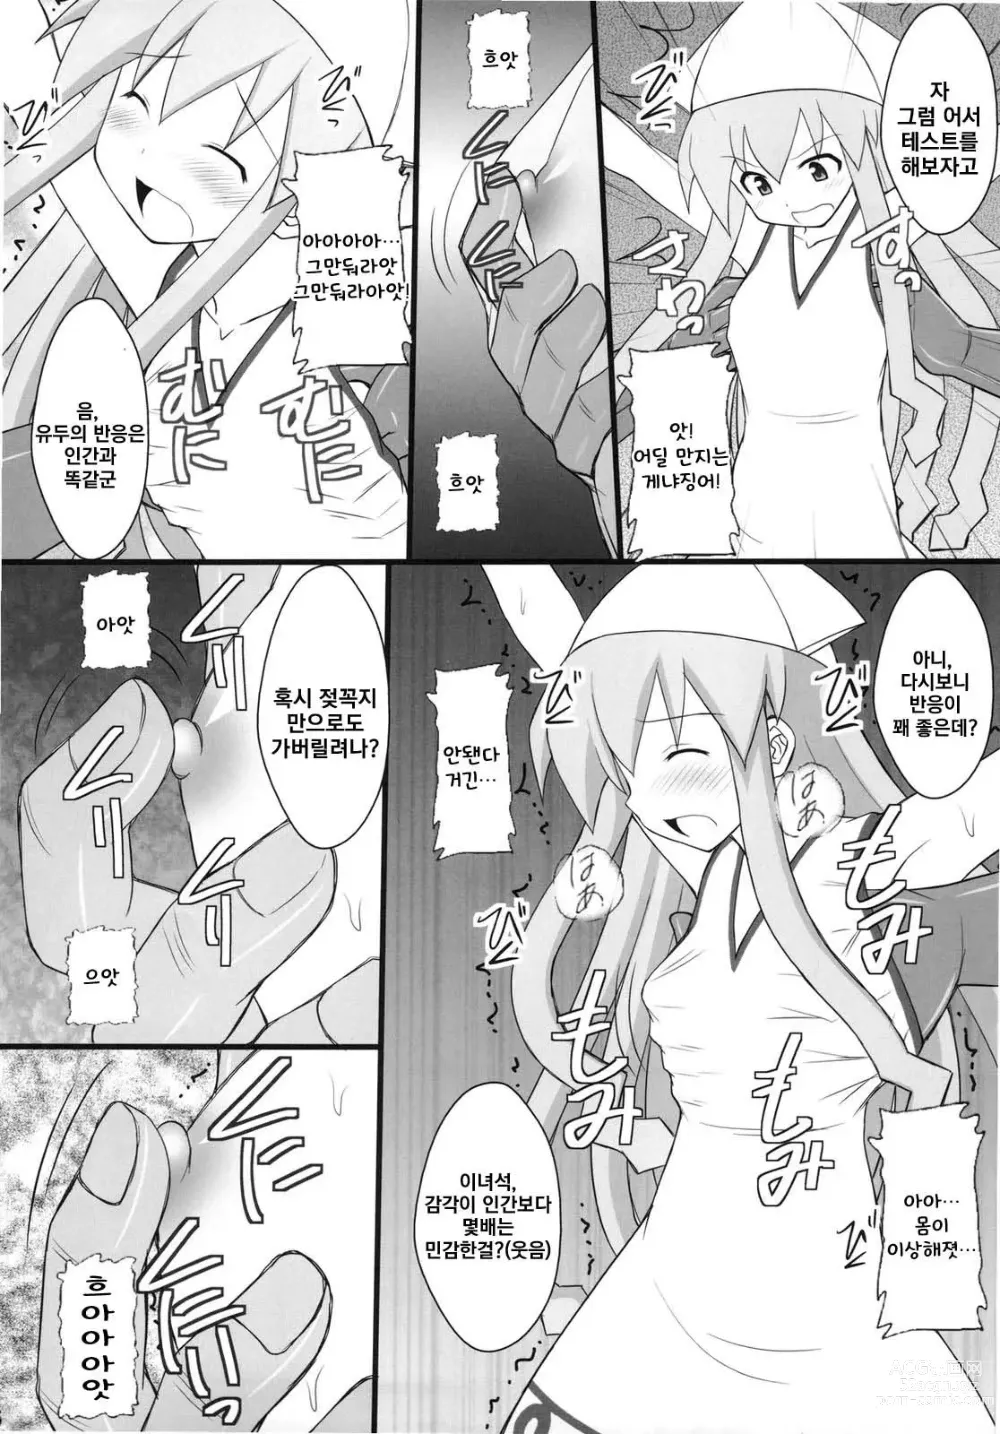 Page 4 of doujinshi 정신붕괴 할 때까지 간지럽히고 능욕해보는 테스트 4 오징어 소녀 하지 않겠는가